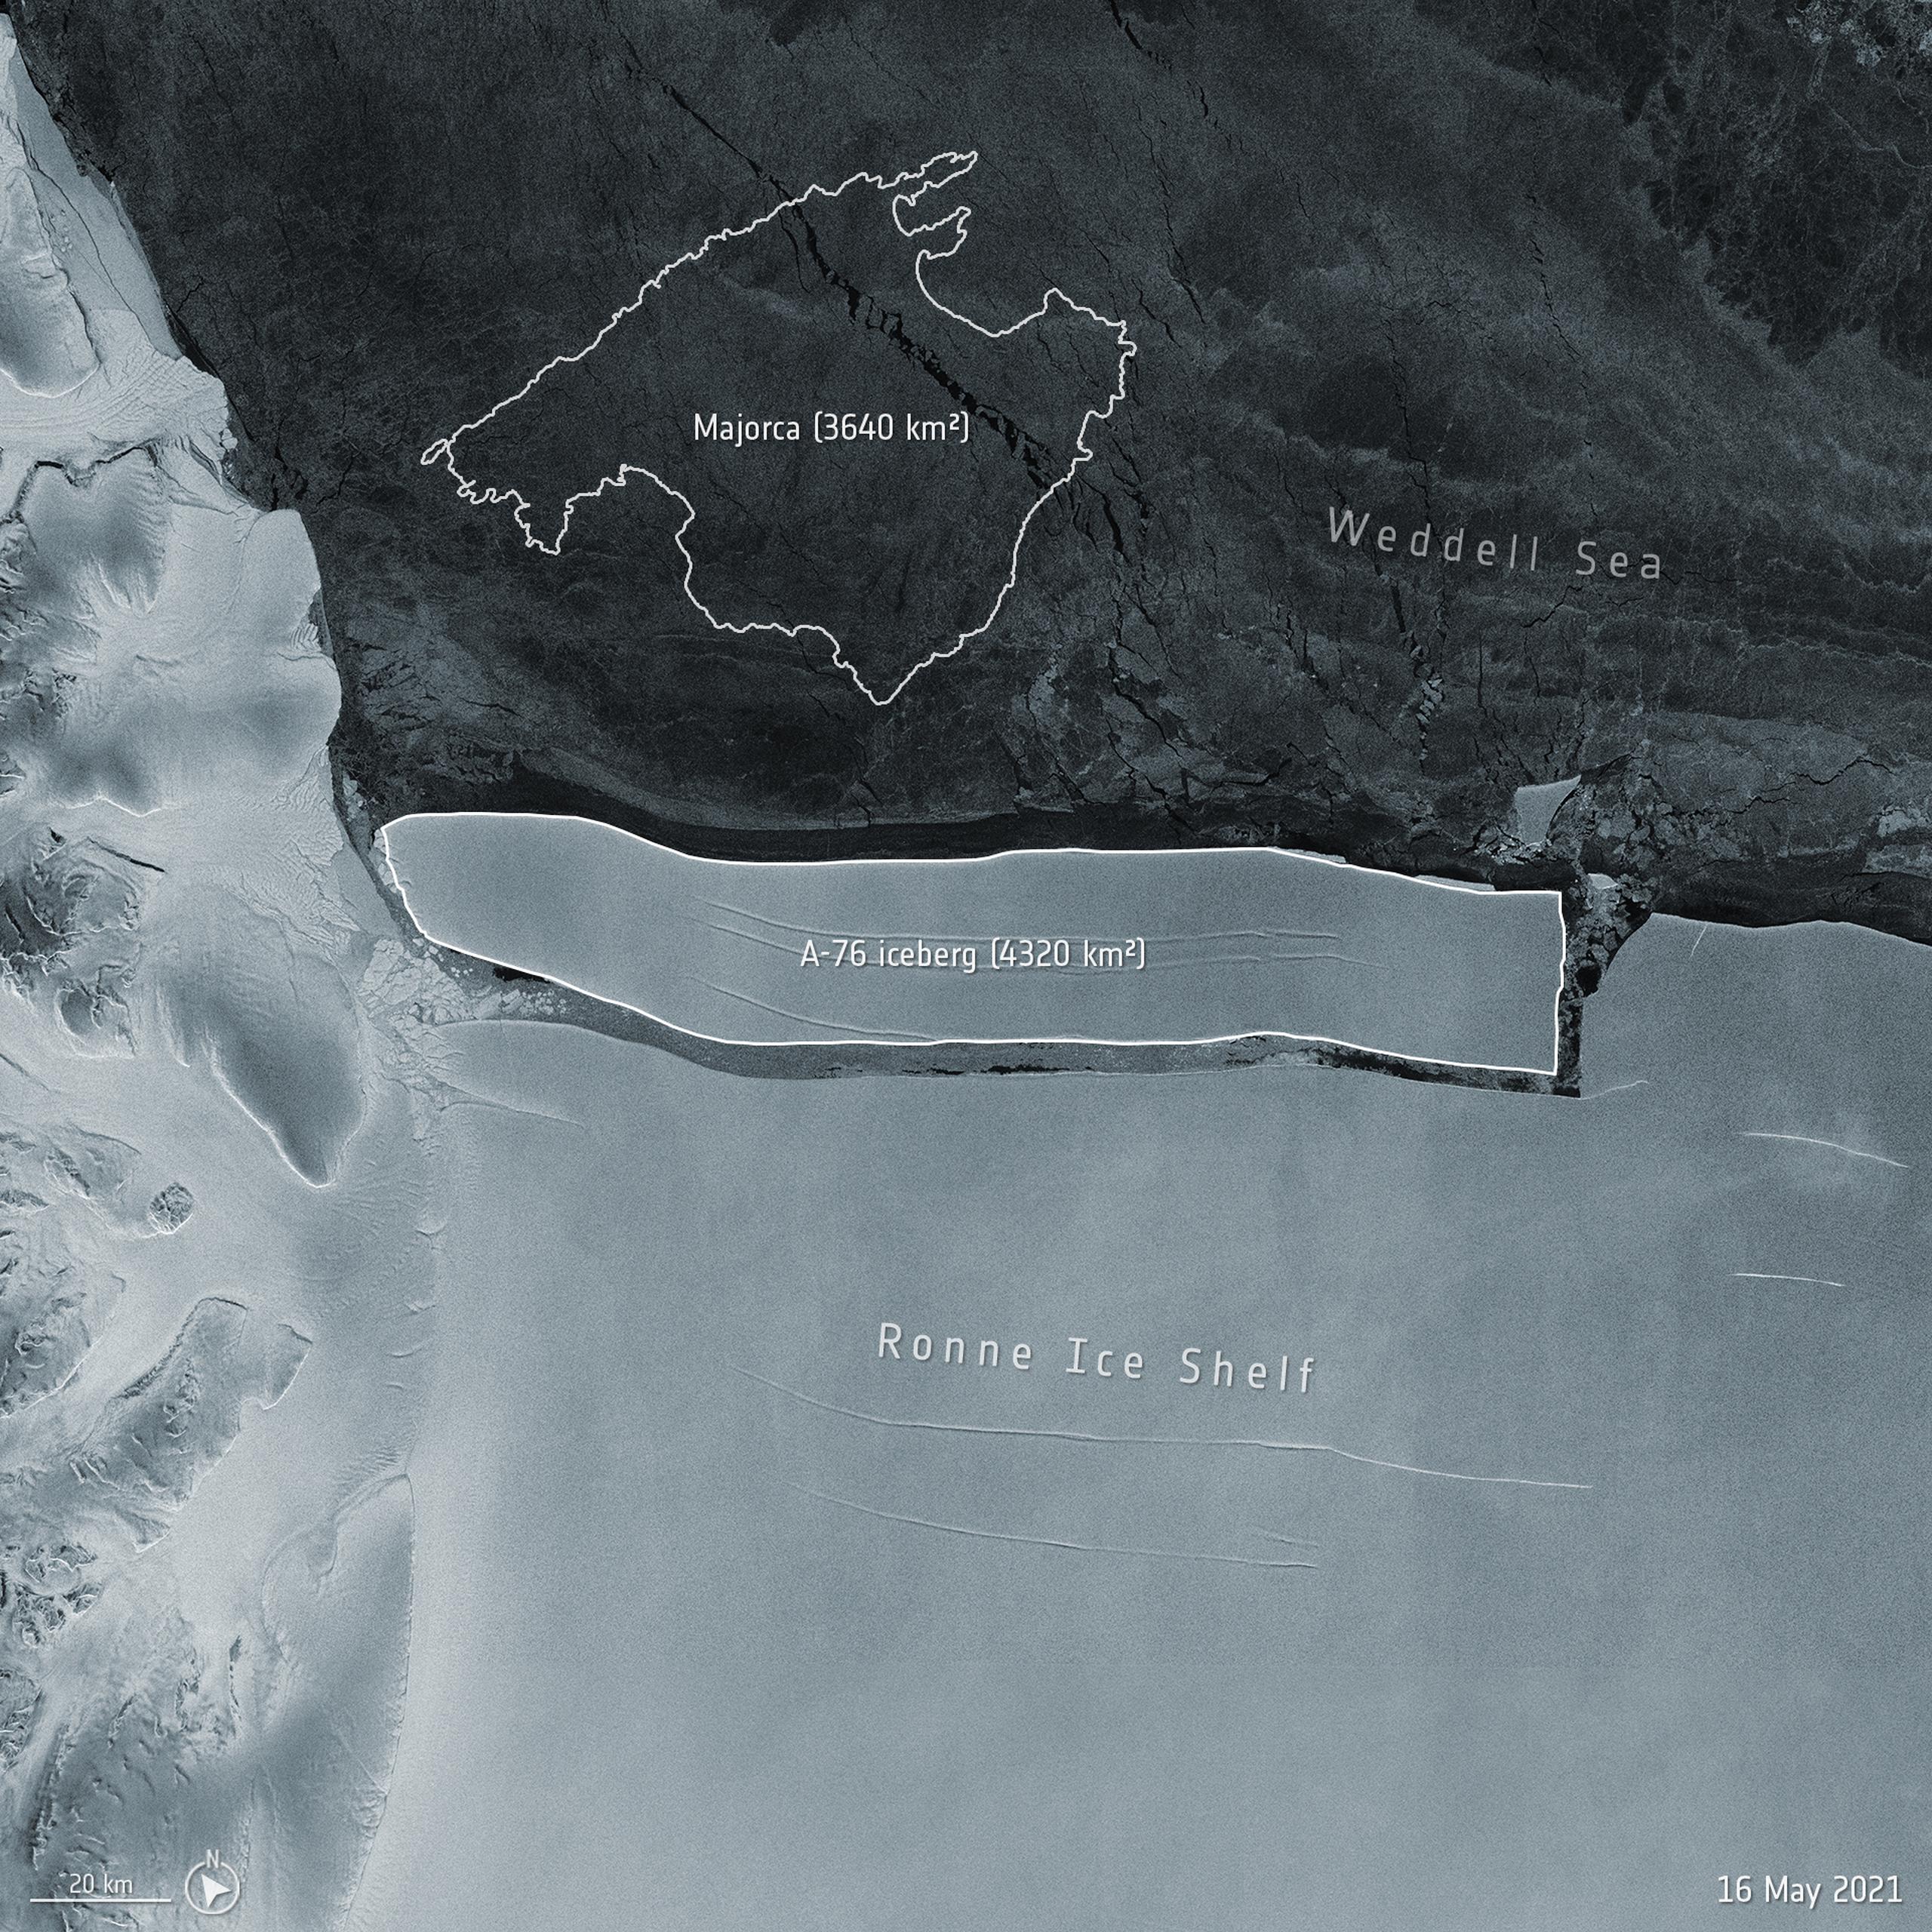 Imagen provista por la Agencia Espacial Europea que compara el tamaño del iceberg A-76 con la isla española de Mallorca.